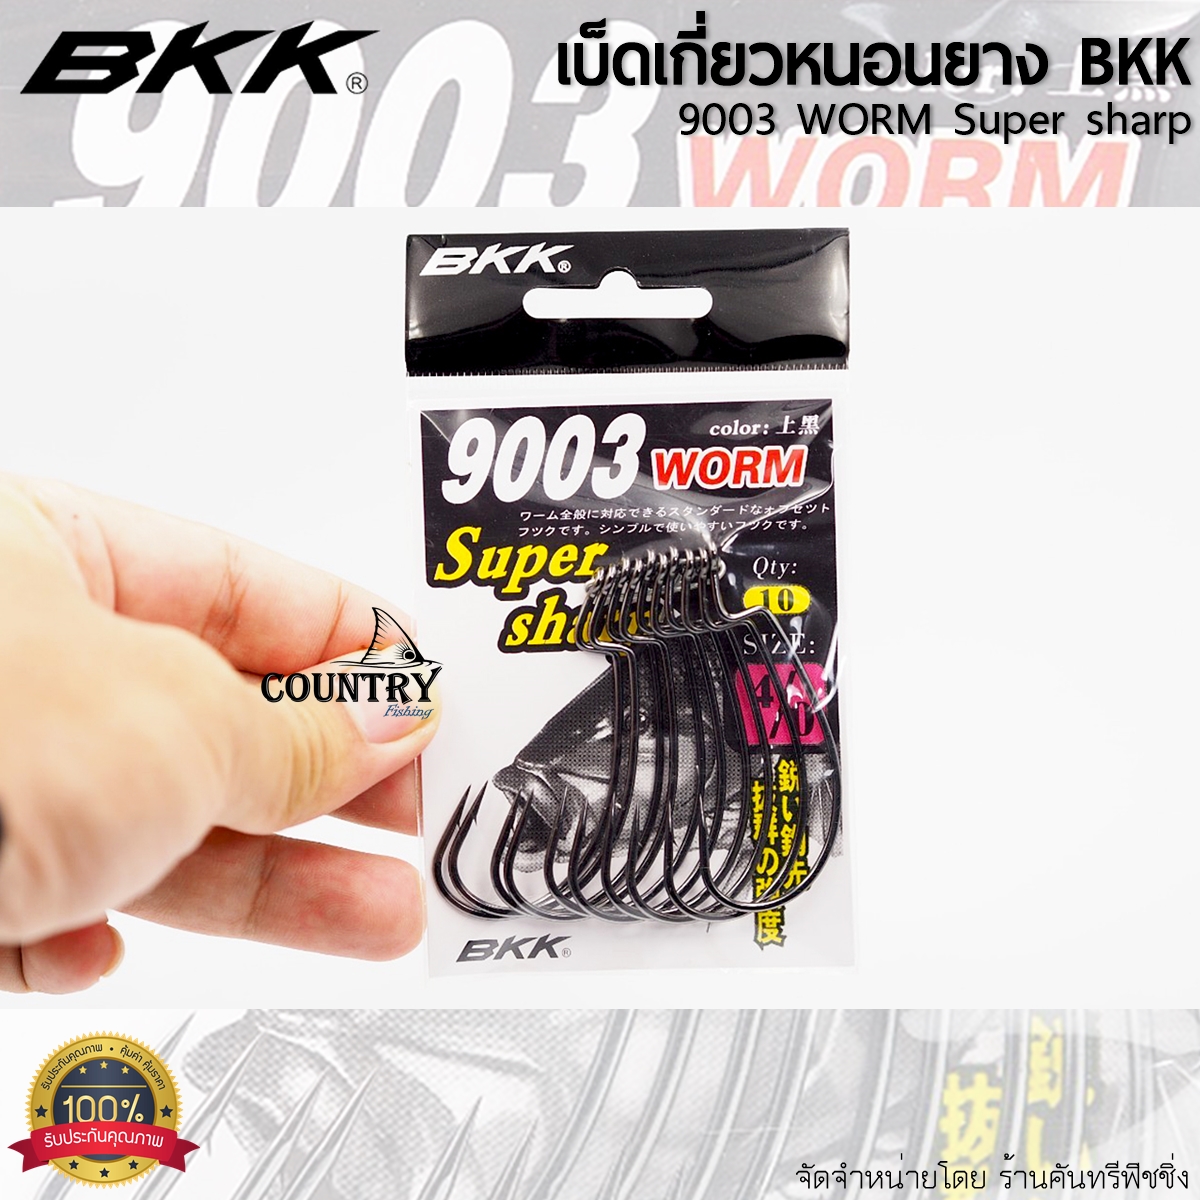 BKK BLACK KINGKONG 9003 WORM เบ็ดเกี่ยวหนอนยาง ปลายาง แบล็คคิงคอง